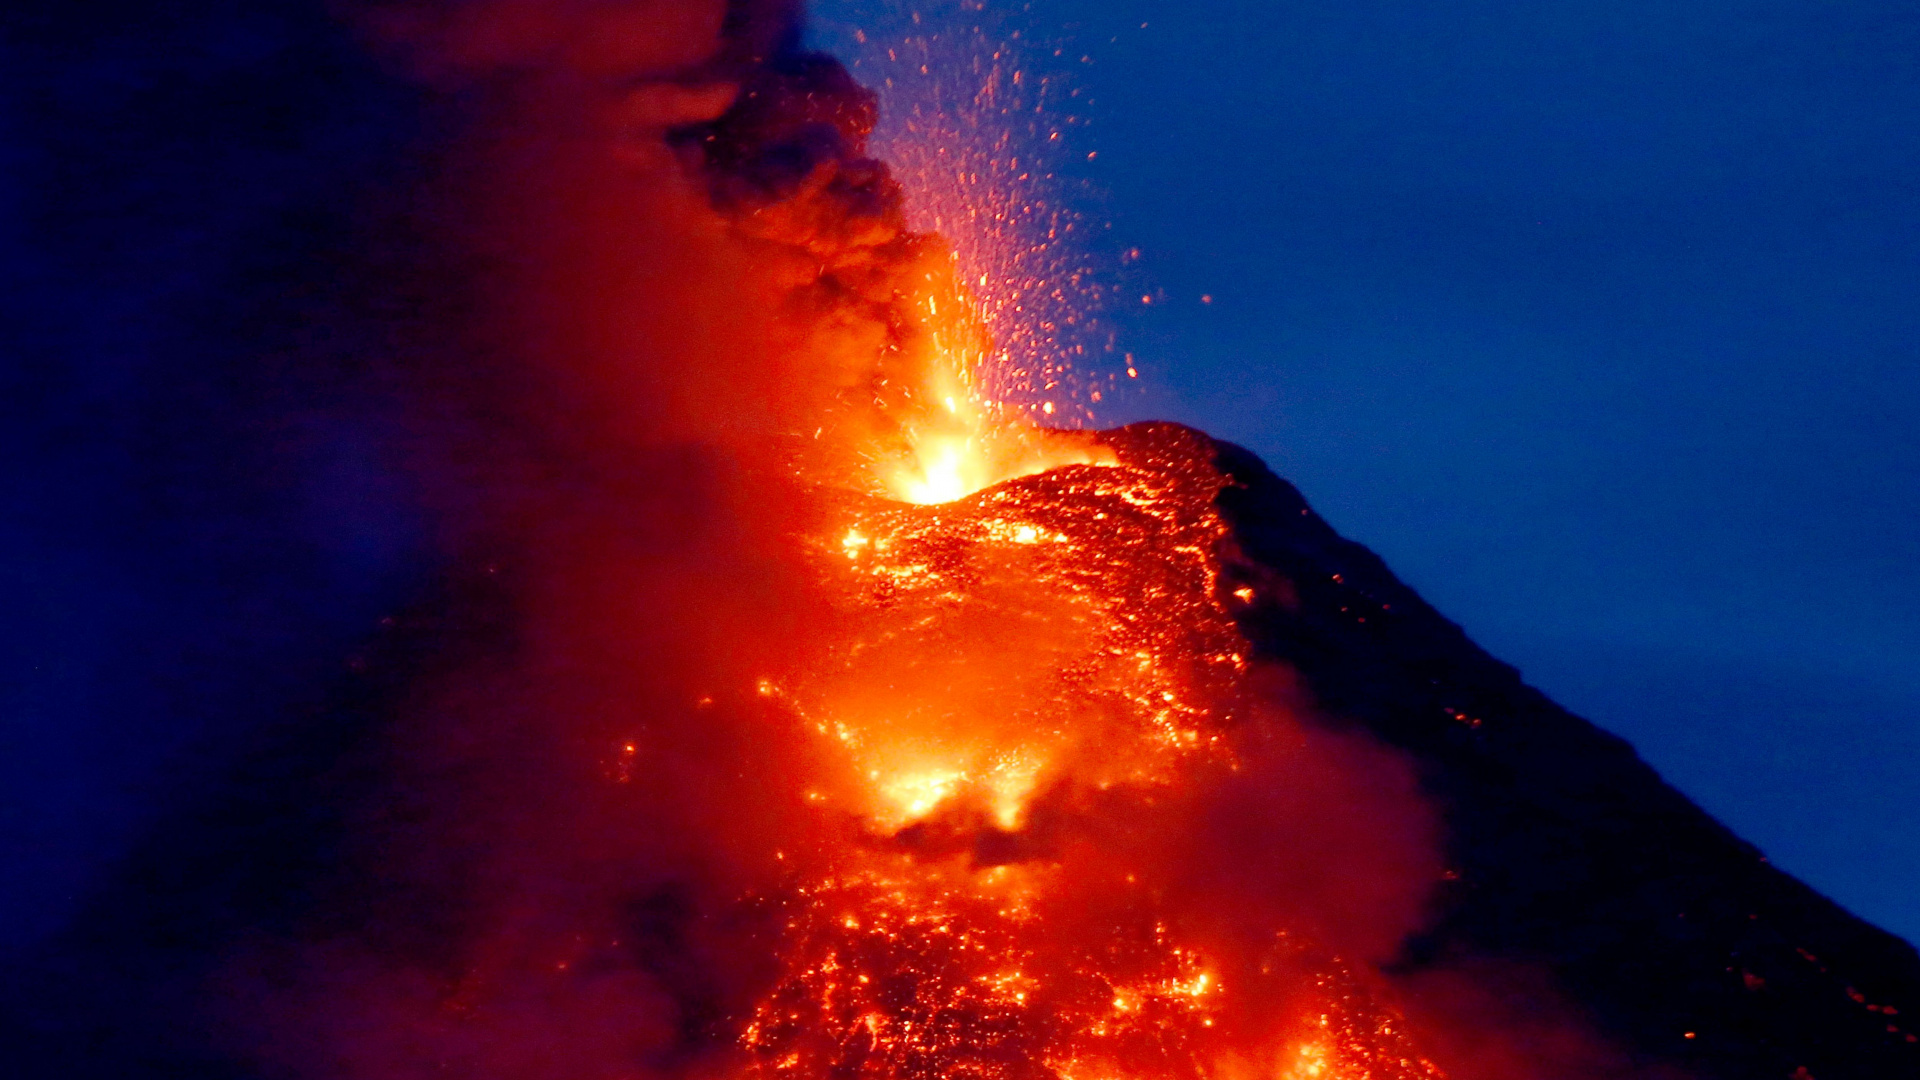 火山的地貌, 类型的火山爆发, 熔岩, 熔岩圆顶, 屏蔽火山 壁纸 1920x1080 允许